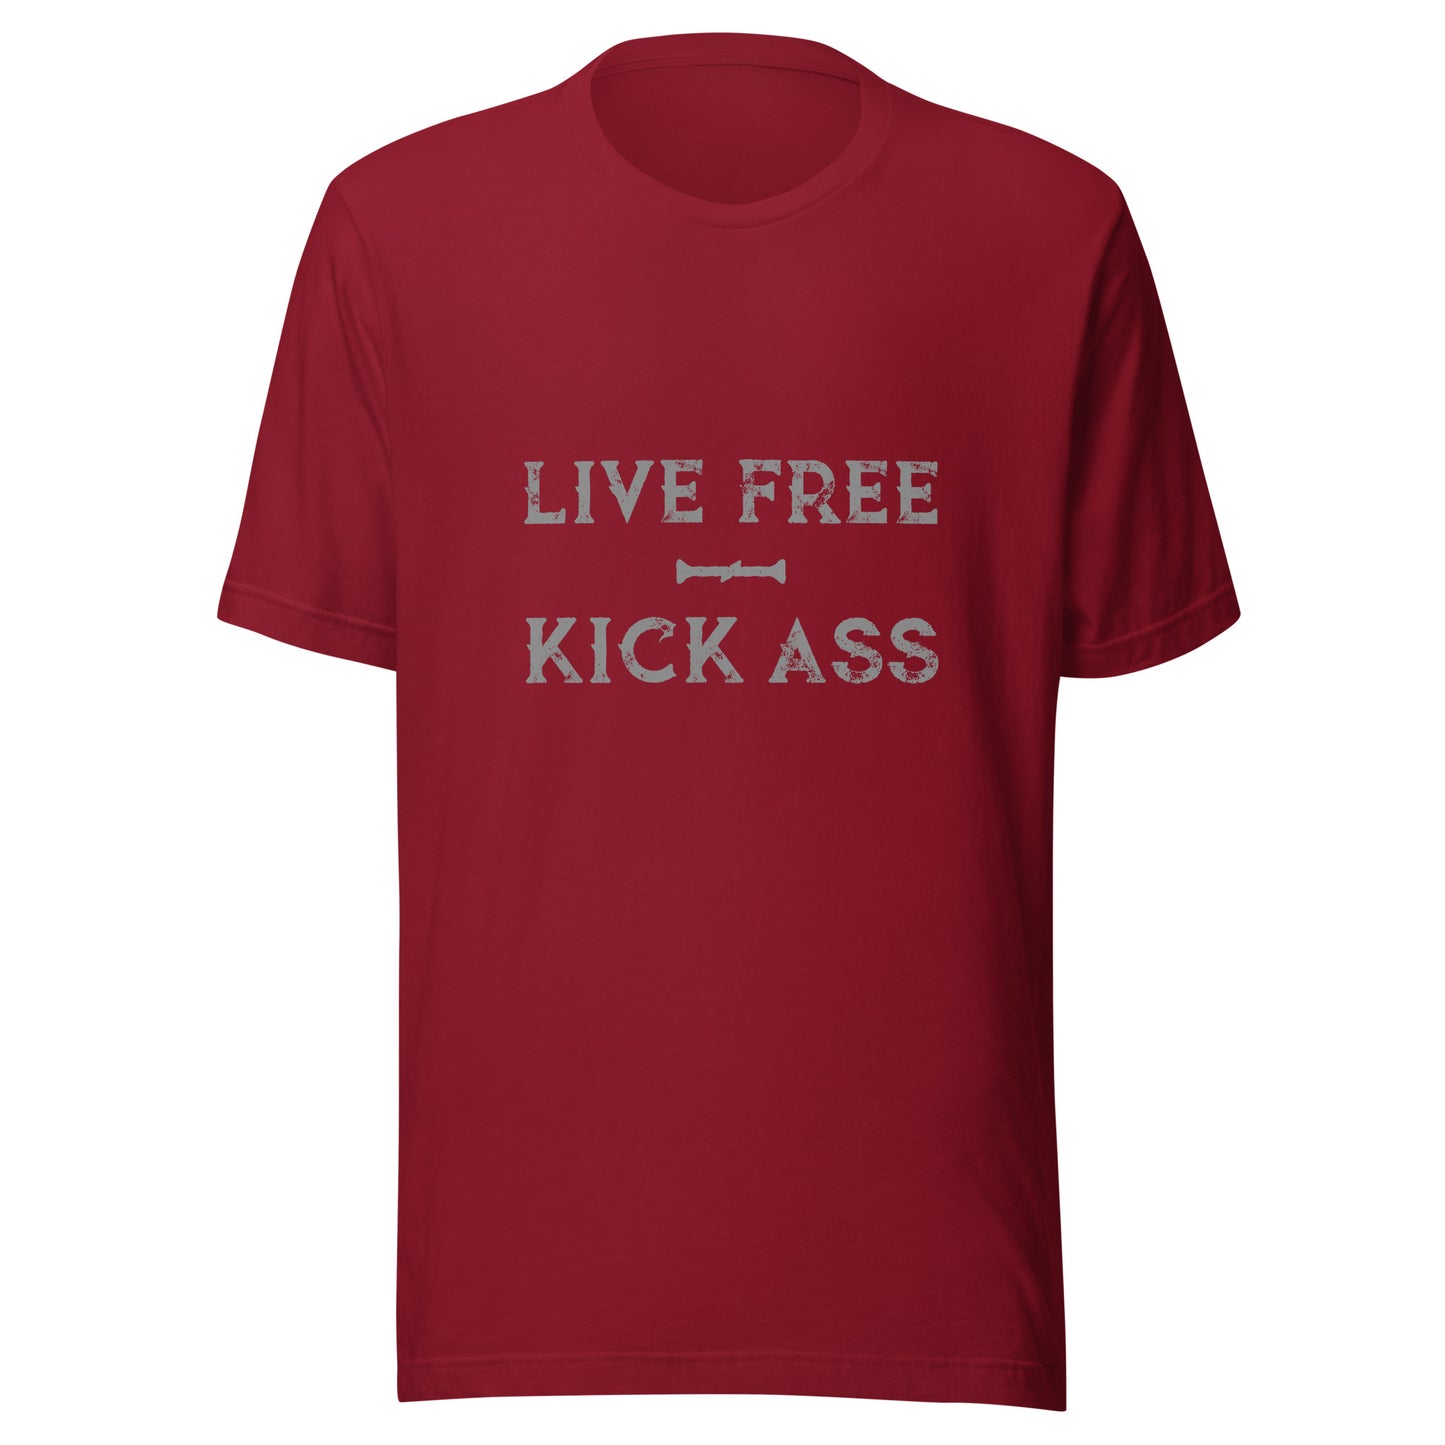 Live Free Kick Ass t-shirt